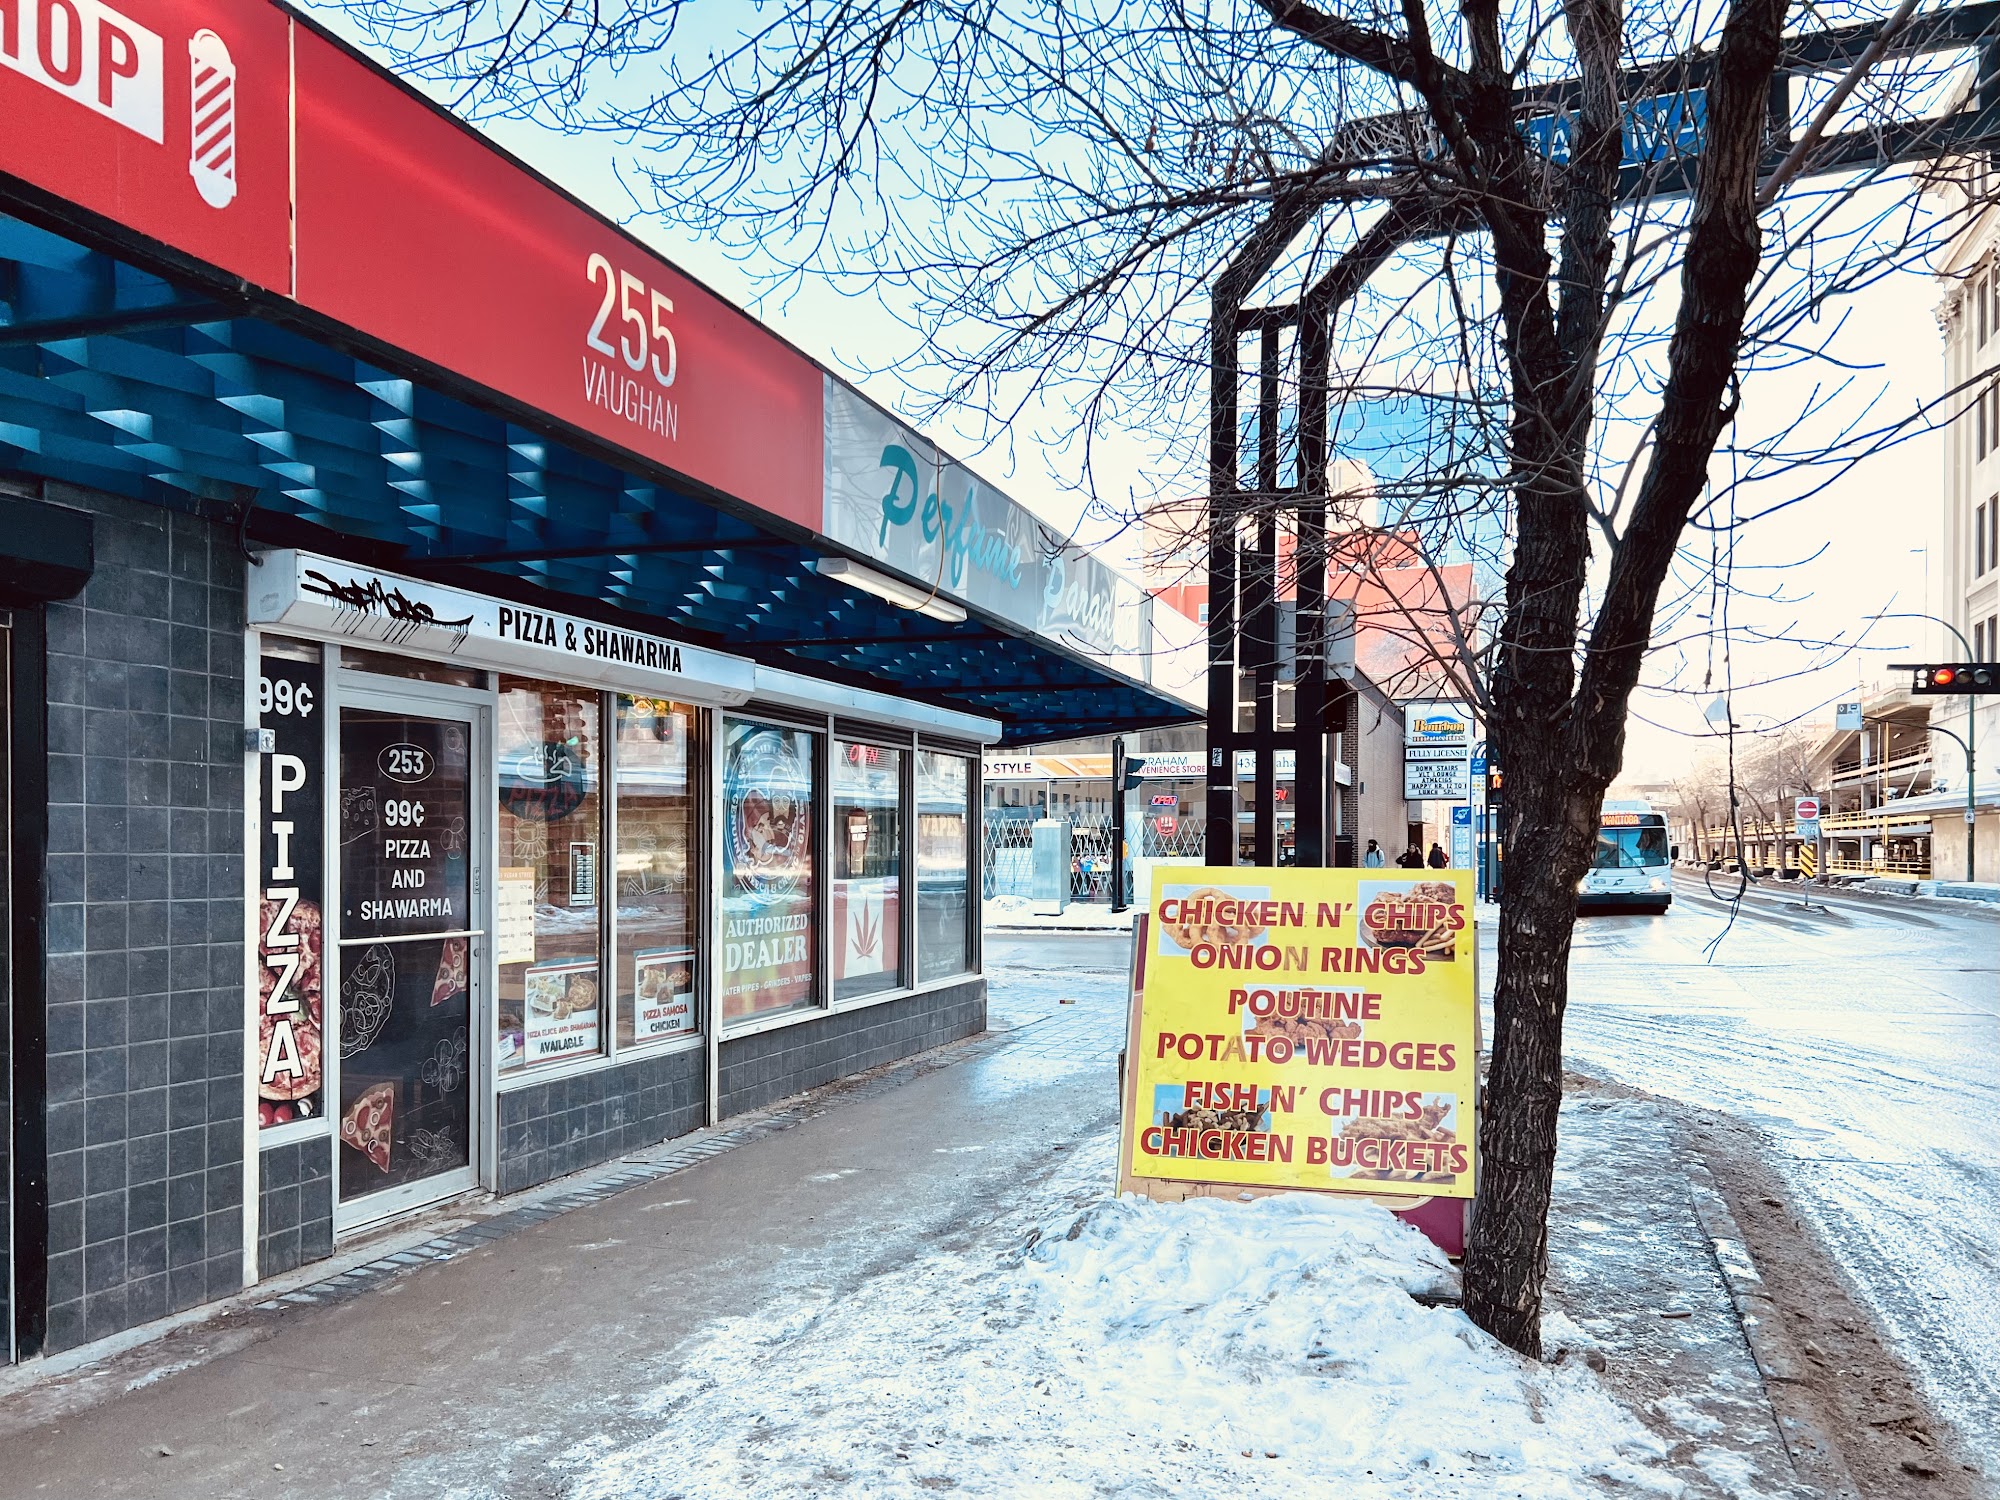 Pizza and shawarma 253a Vaughan St, Winnipeg, MB R3C 1T8